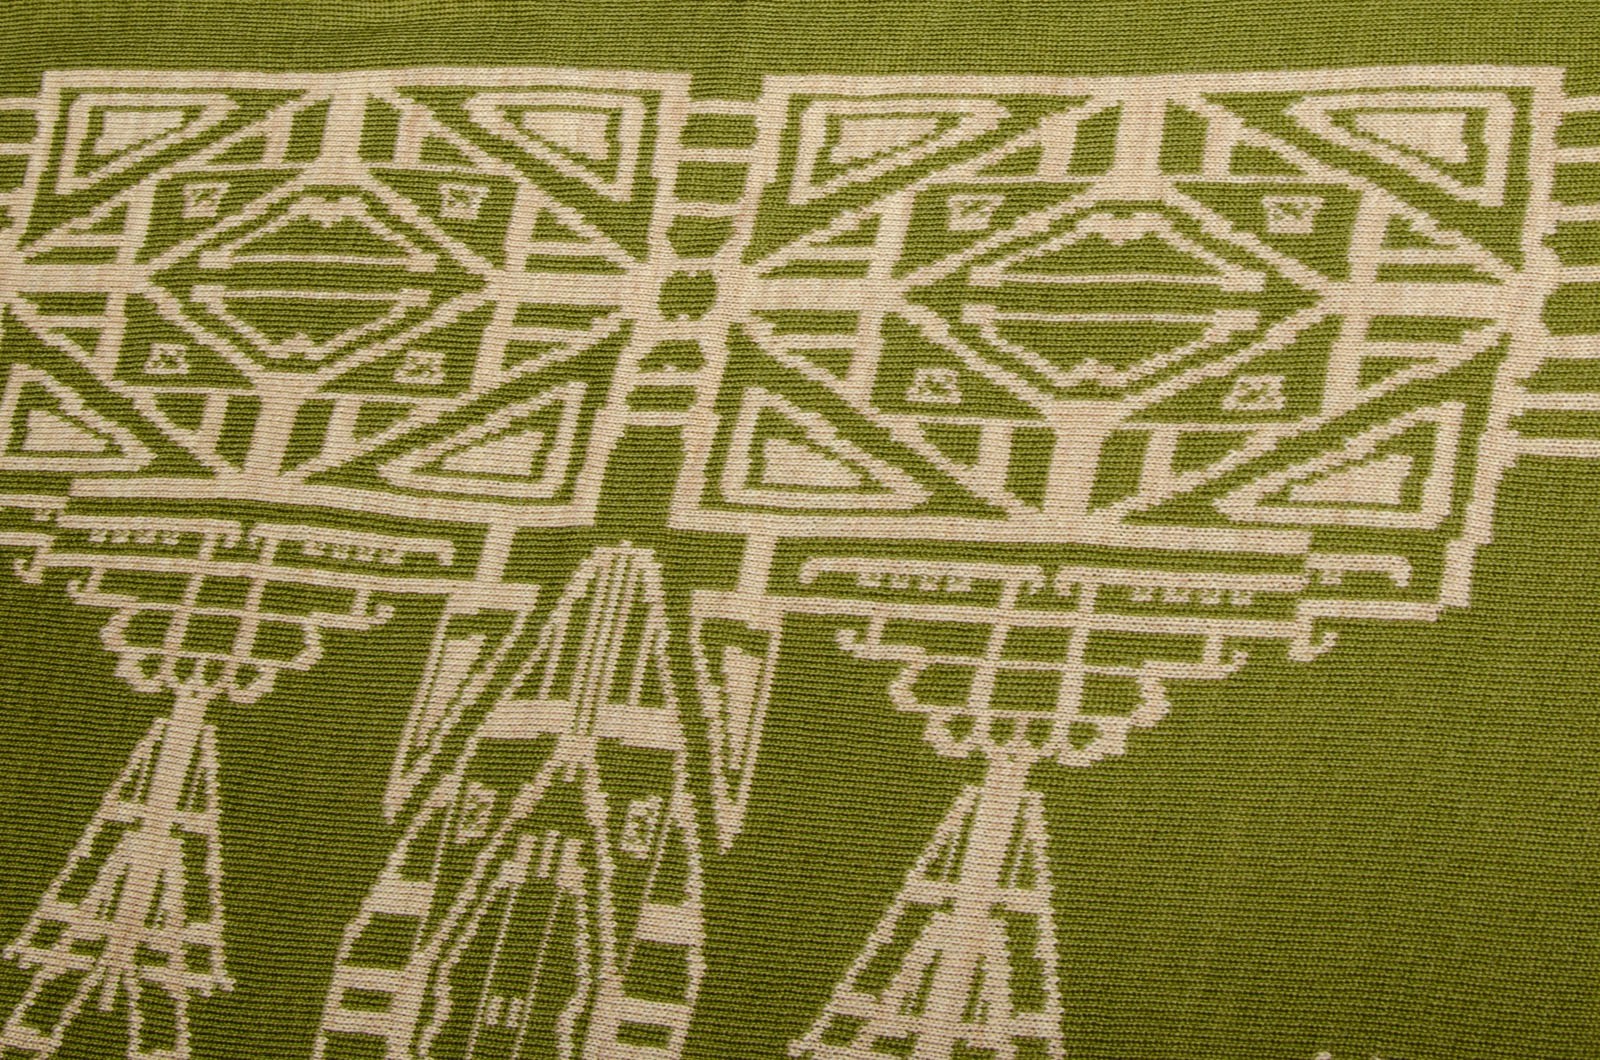 Stole, triangular Aztek shawl in green and beige 3